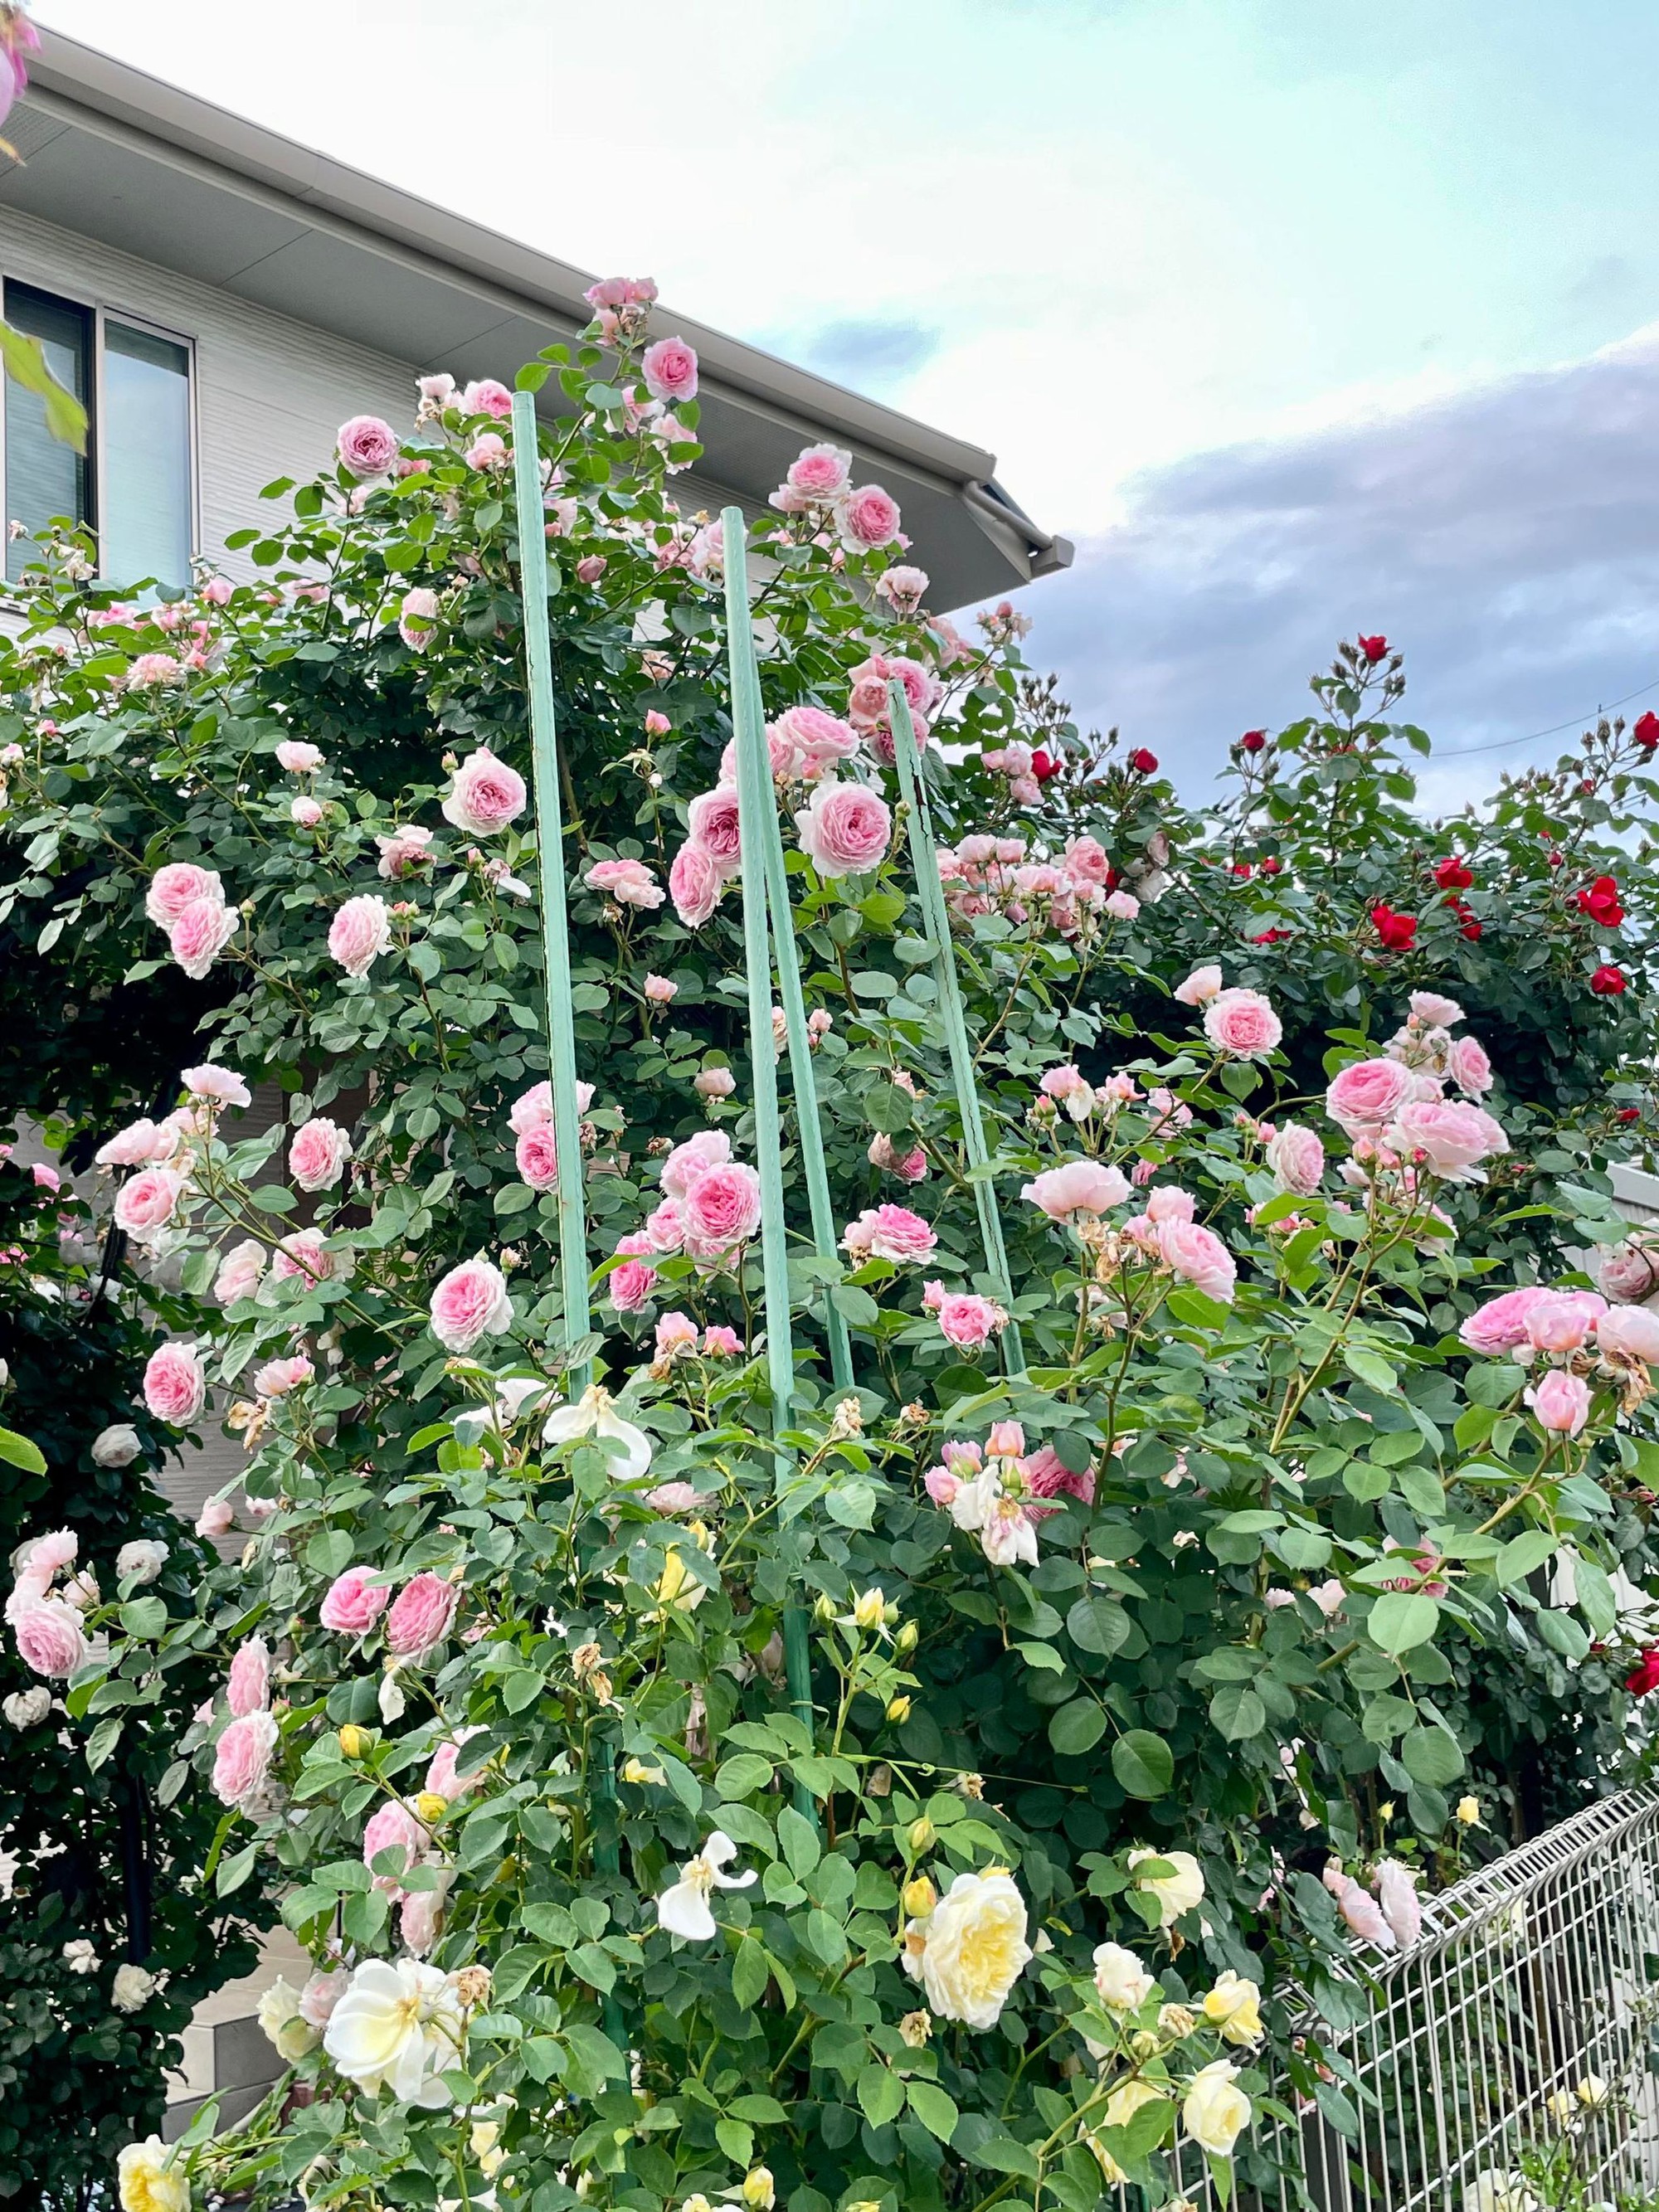 Ngôi nhà lúc nào cũng thơm nức mùi hoa vì có vườn hồng hơn 80 loại của mẹ Việt ở Nhật- Ảnh 11.